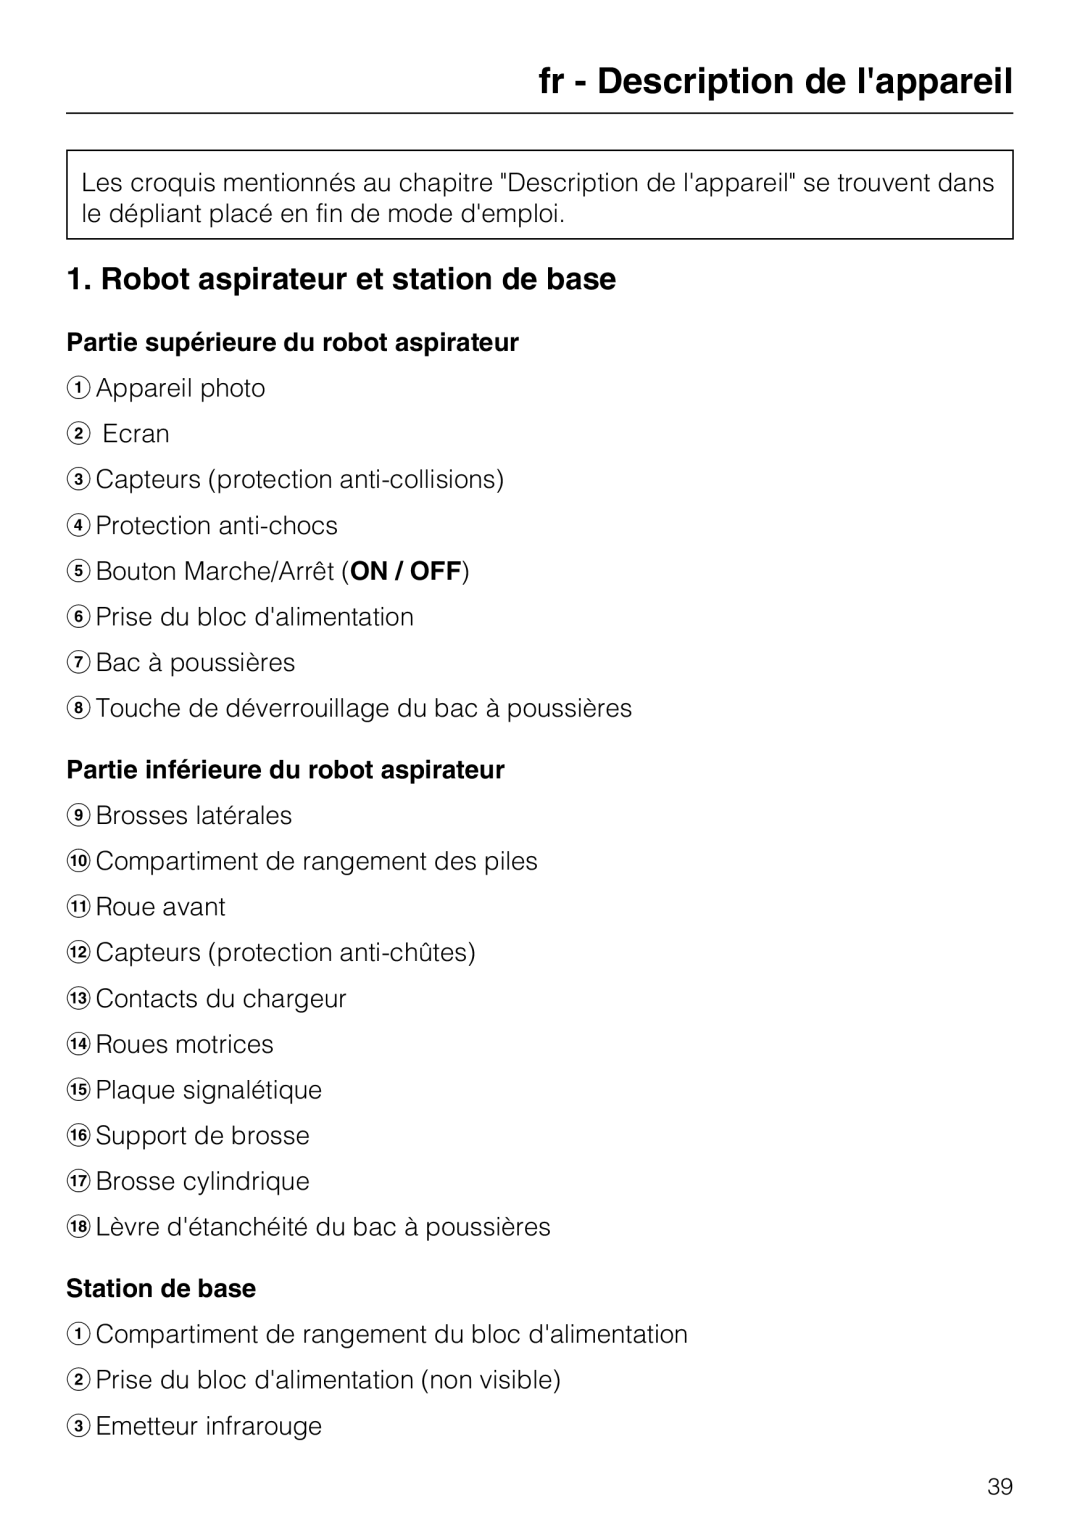 Miele HS17 manual fr - Description de lappareil, Robot aspirateur et station de base, Partie supérieure du robot aspirateur 